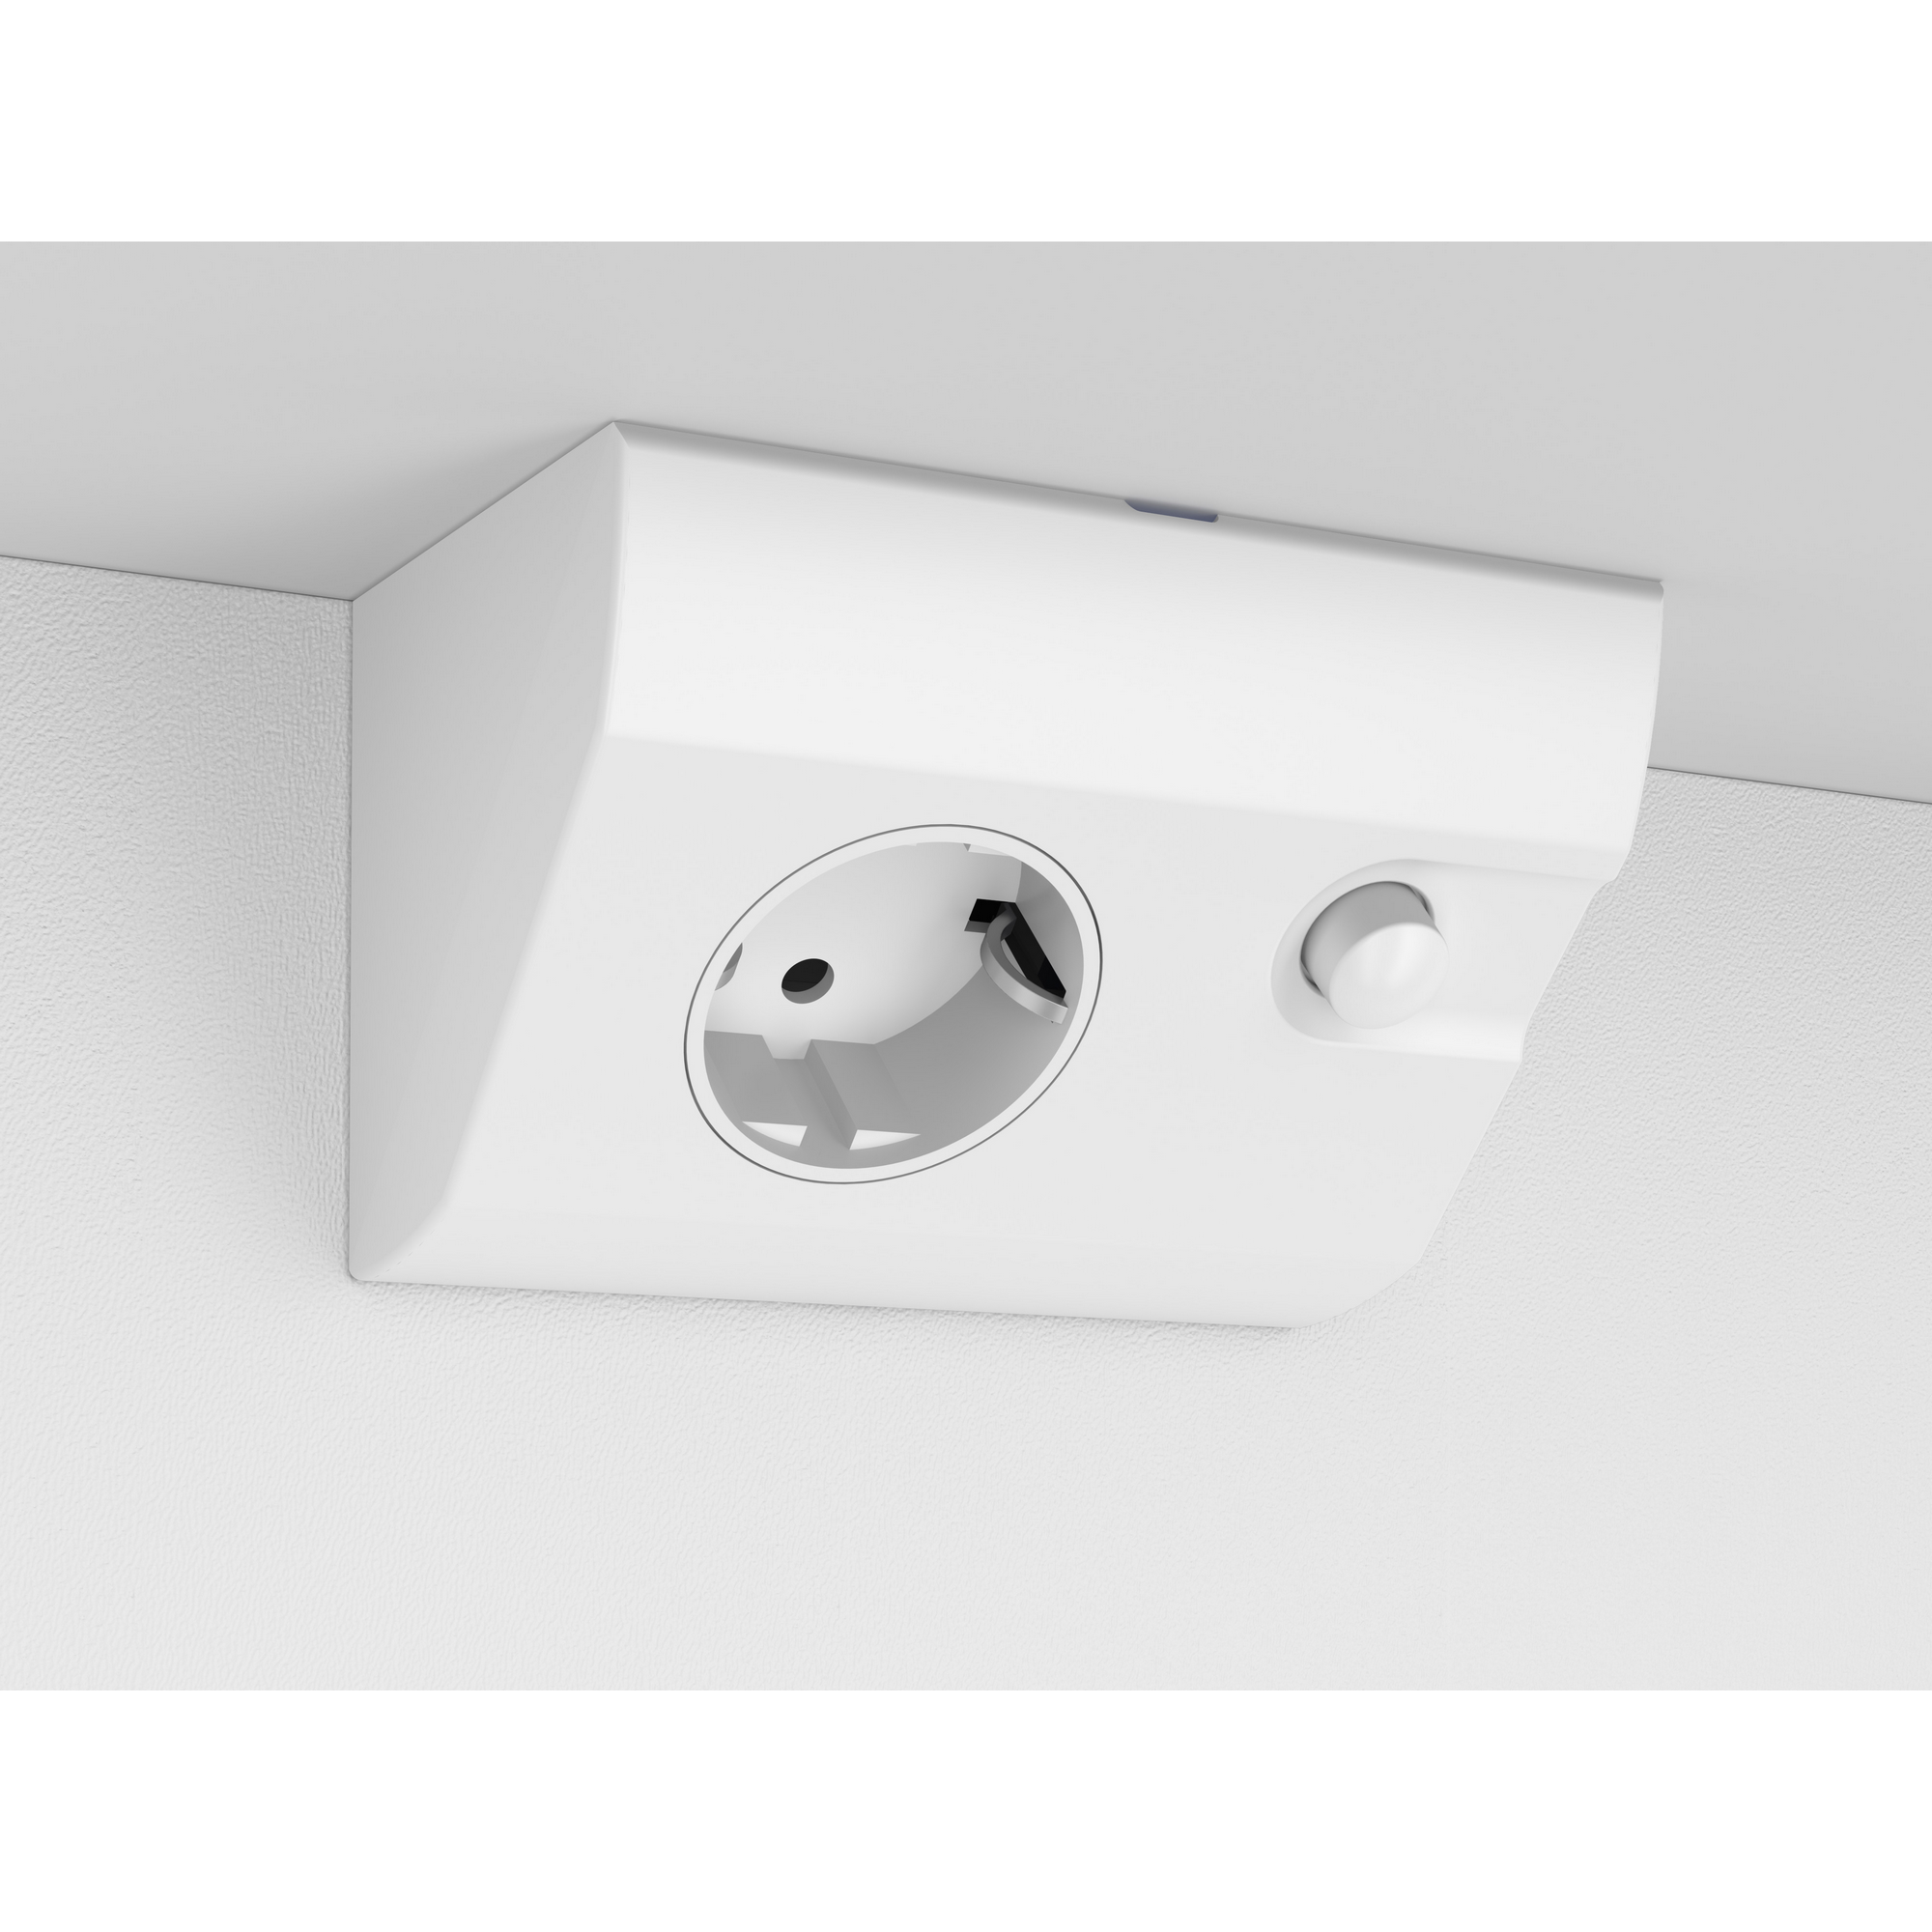 LED-Spiegelschrank 'Gabun' weiß 40 x 66,9 x 14,6 cm + product picture